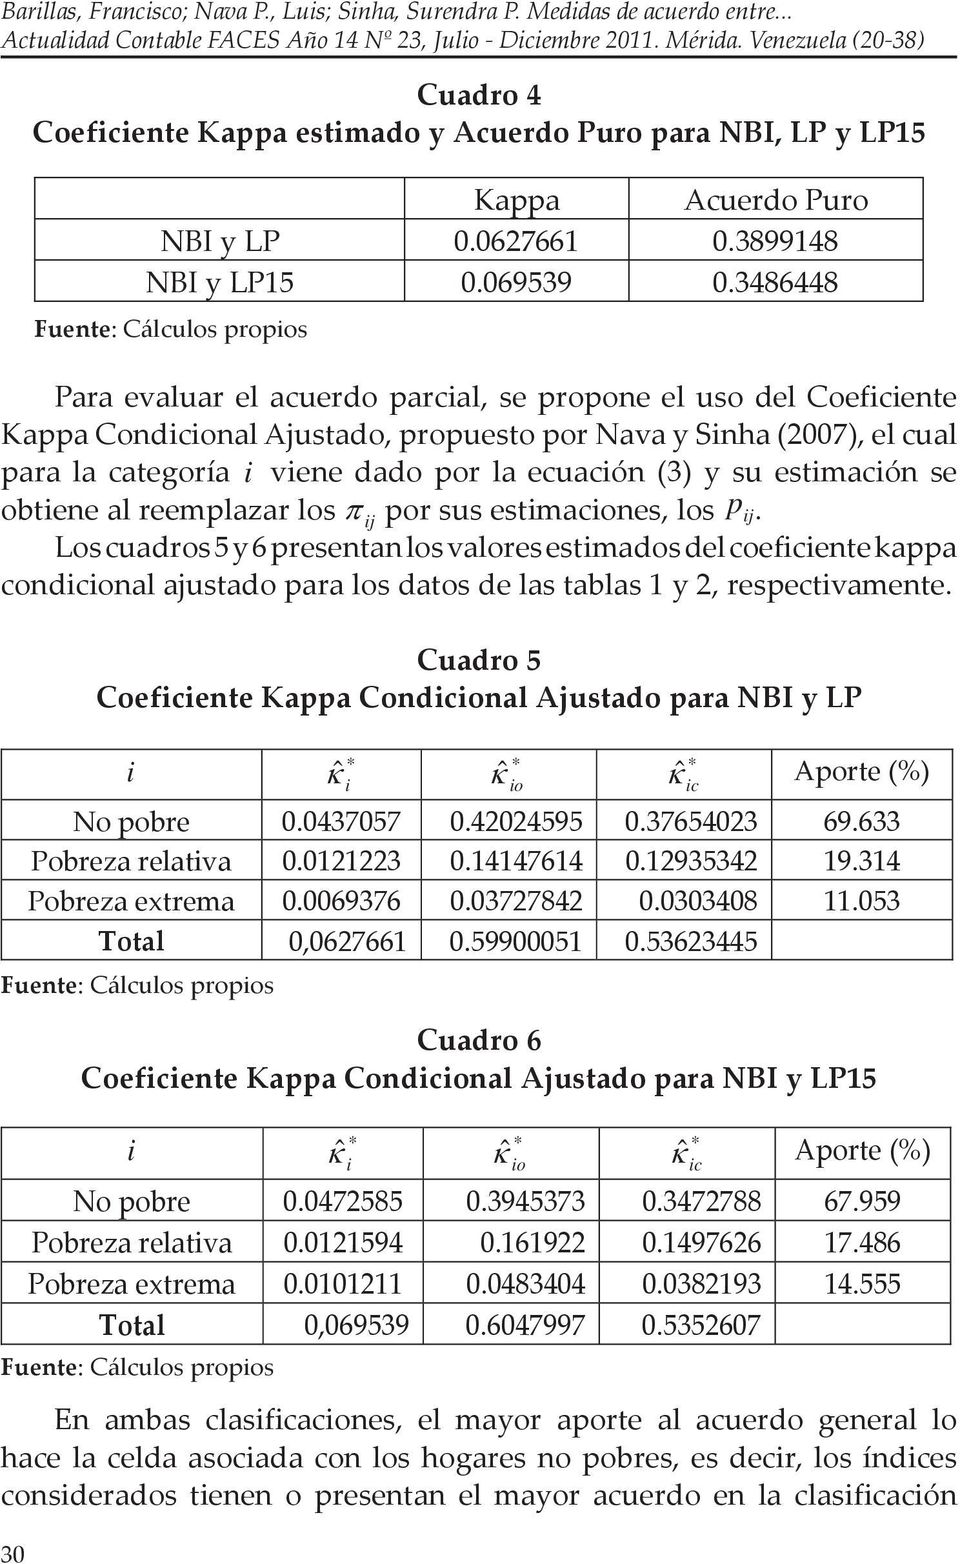 3486448 Para evaluar el acuerdo parcal, se propone el uso del Coefcente Kappa Condconal Ajustado, propuesto por Nava y Snha (2007), el cual para la categoría vene dado por la ecuacón (3) y su